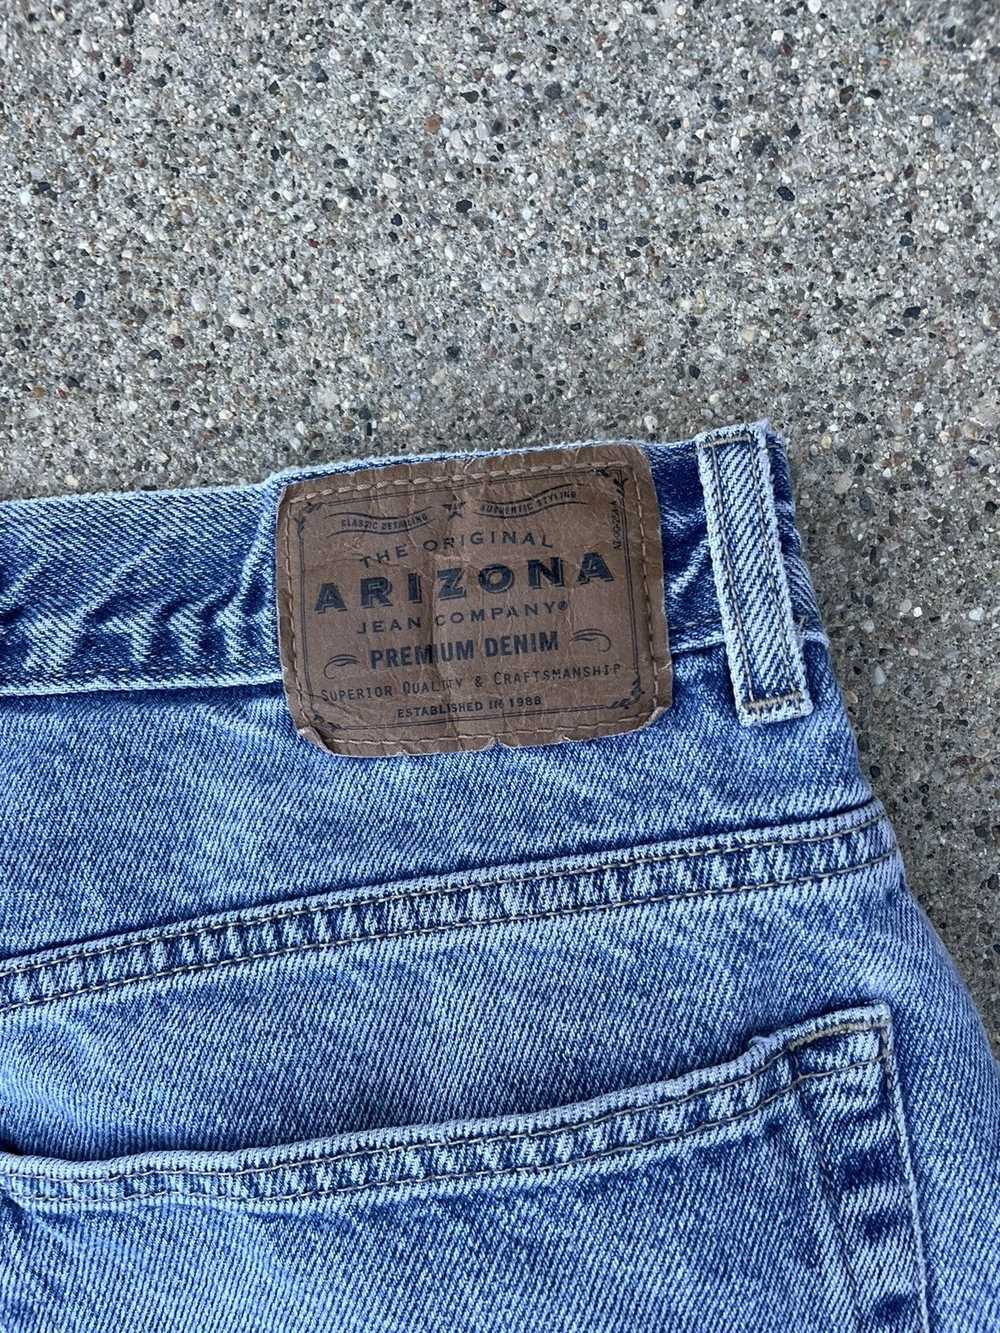 Arizona Jean Company × Streetwear × Vintage Y2K D… - image 2